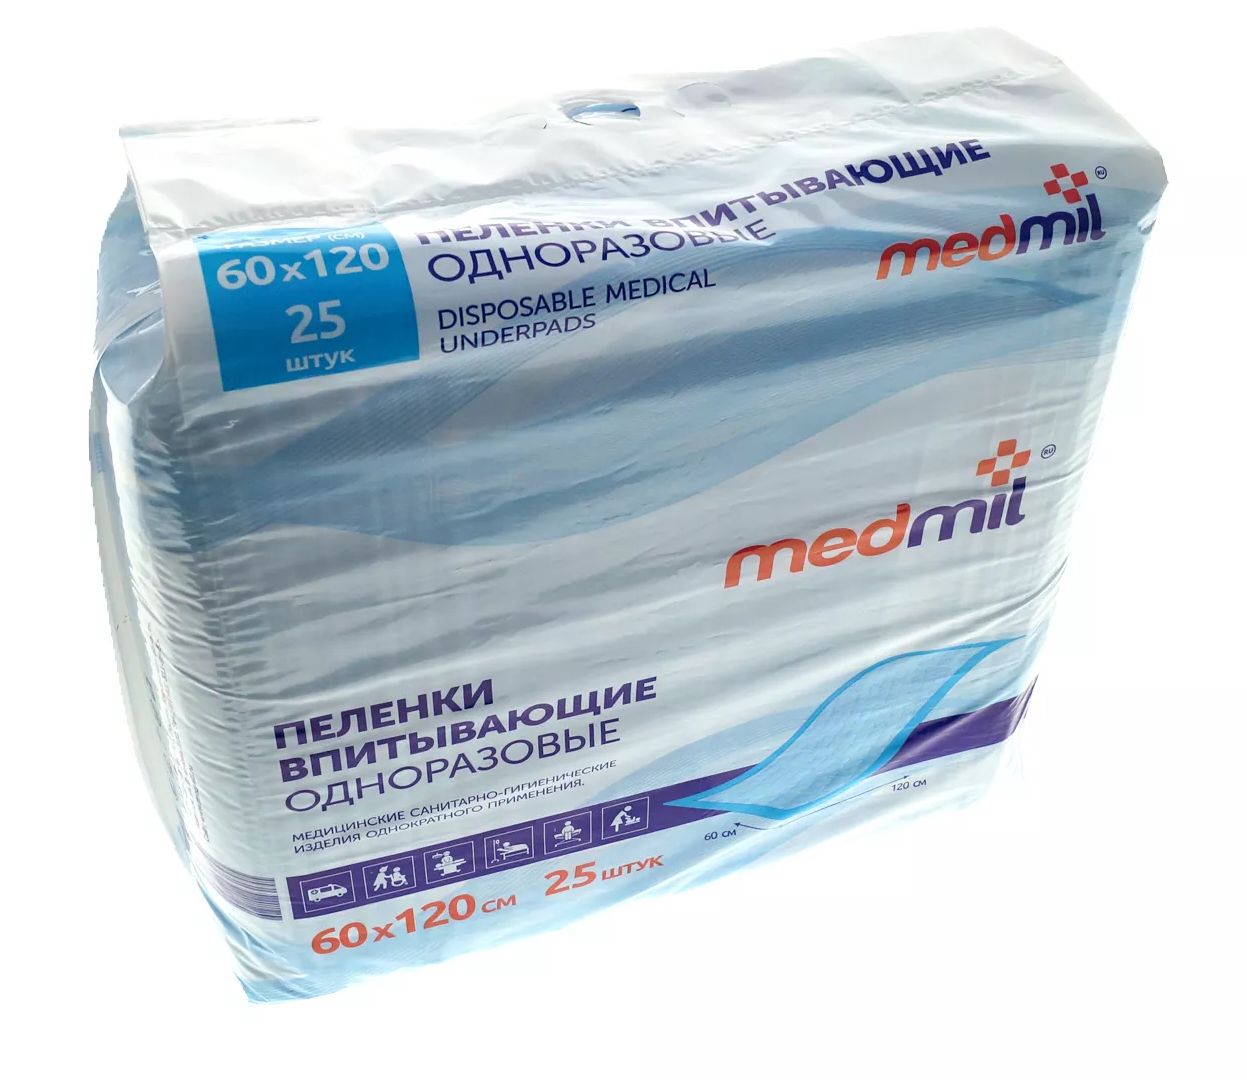 Пеленка Медмил ОПТИМА, впитывающая, размер 60*120см, упаковка 25шт, 5 слоев, нестерильная, фирменная упаковка (НДС 10%)